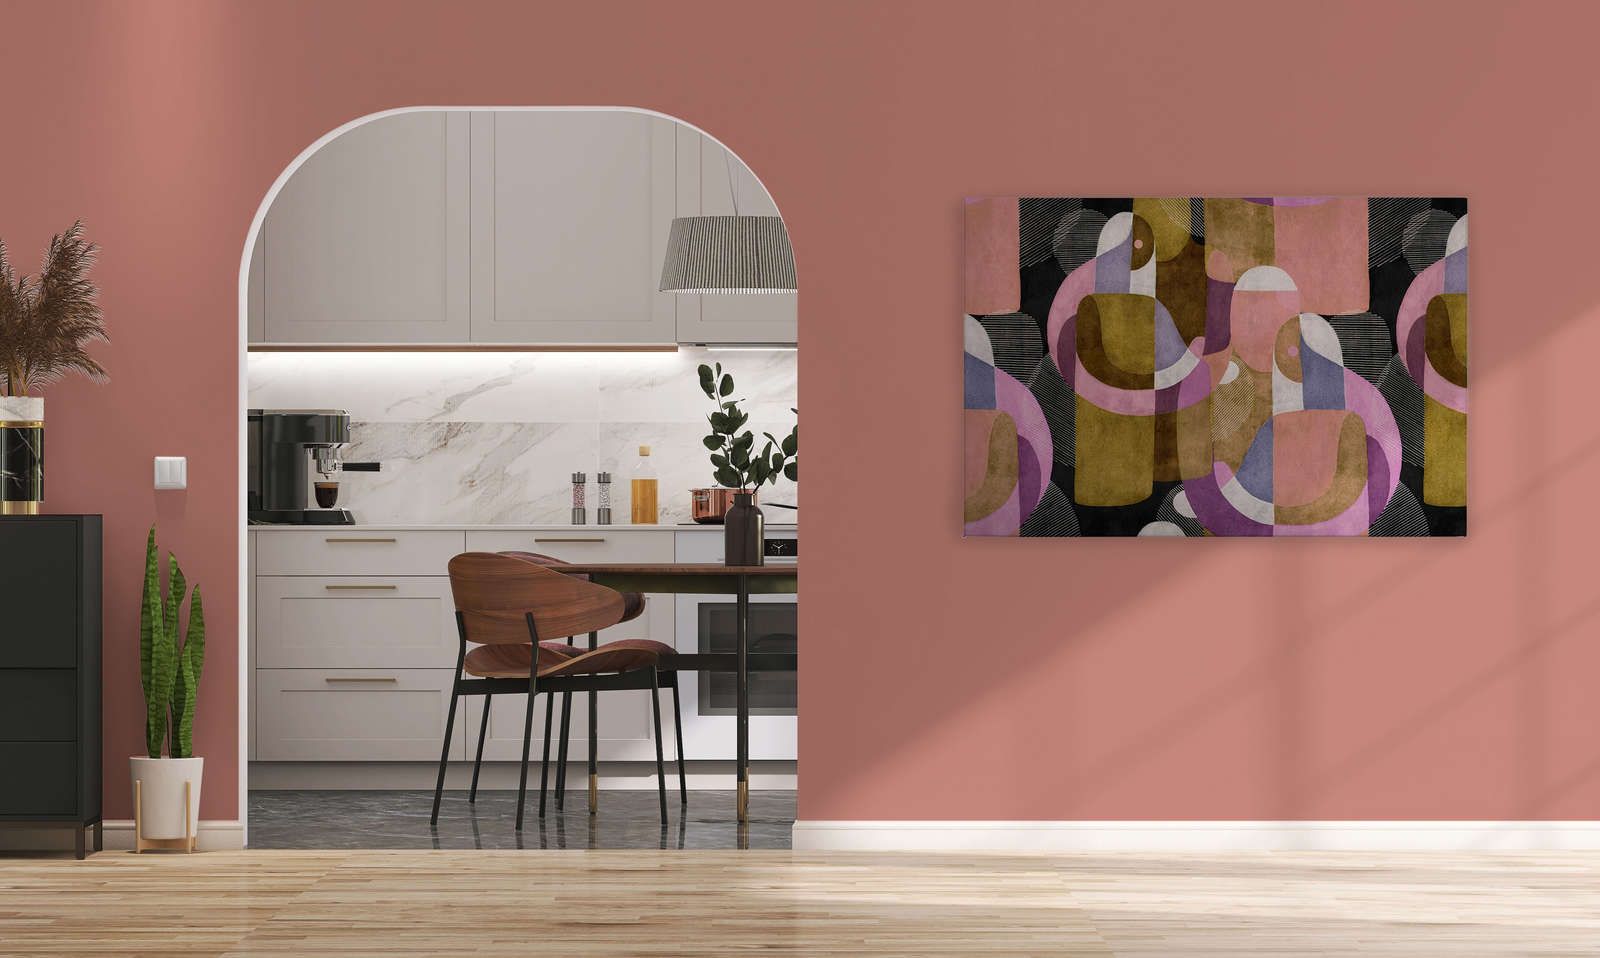             Meeting Place 3 - Canvas schilderij Ethno design in kleurrijke Colour Block stijl - 1,20 m x 0,80 m
        